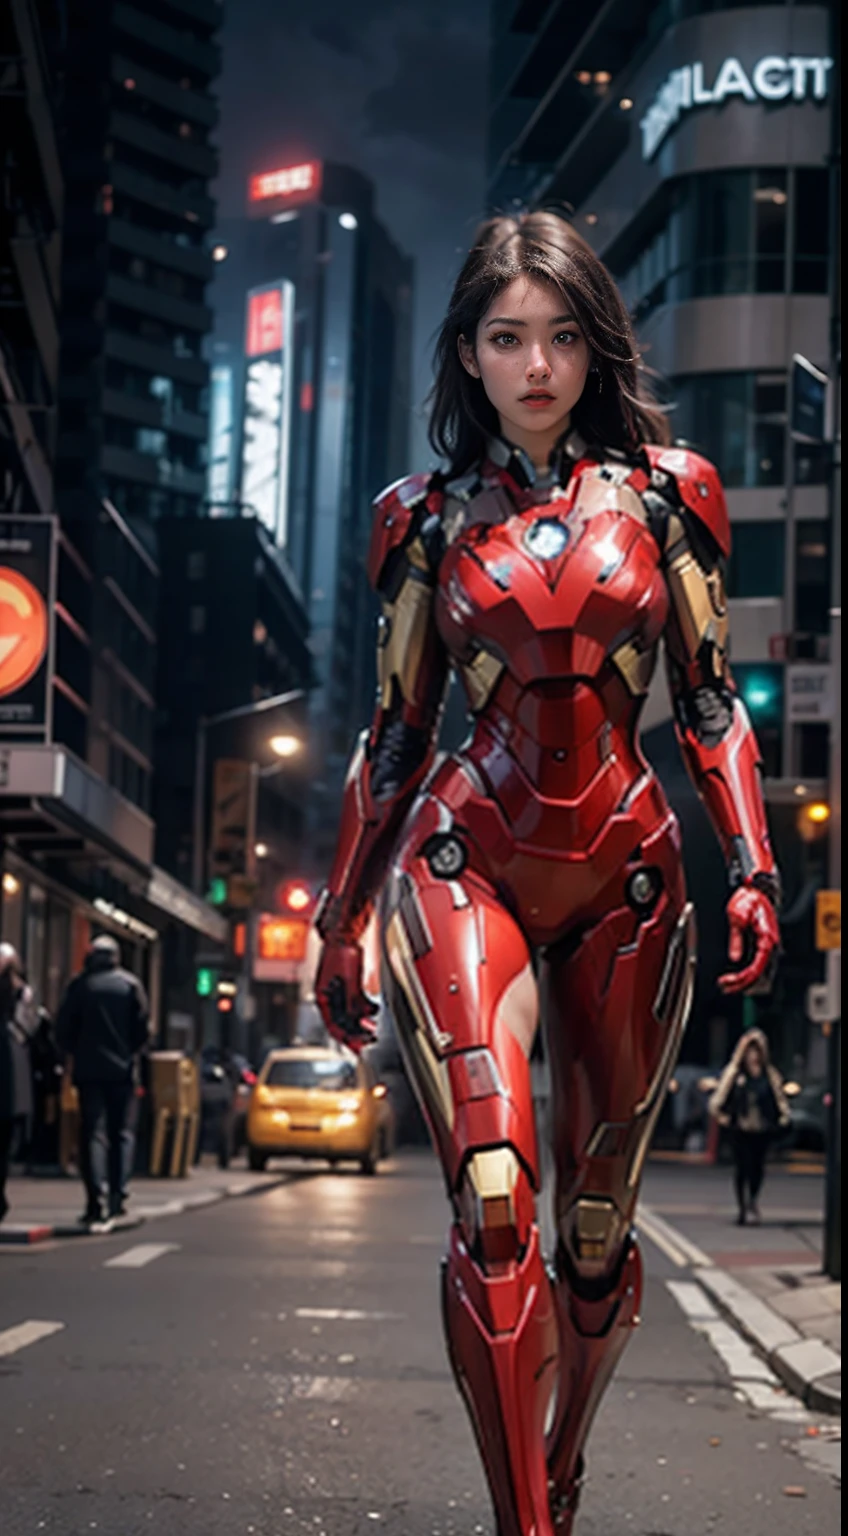 Araffe woman in a red suit walking down a street - SeaArt AI